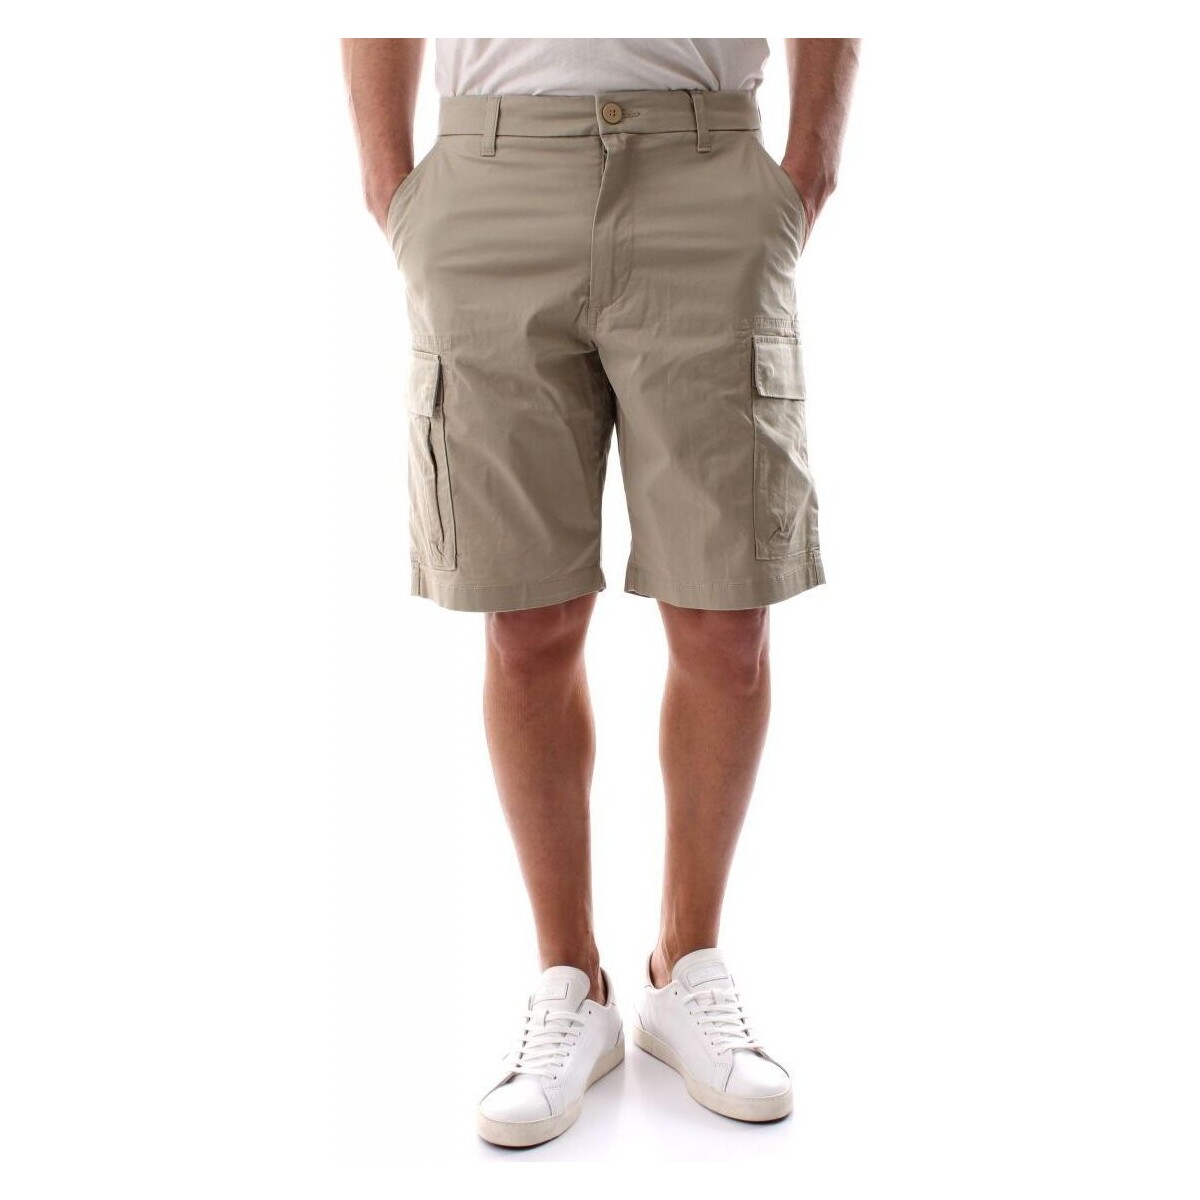 Kleidung Herren Shorts / Bermudas Dockers 87345 0000 SMART CARGO-TAUPE SAND Beige